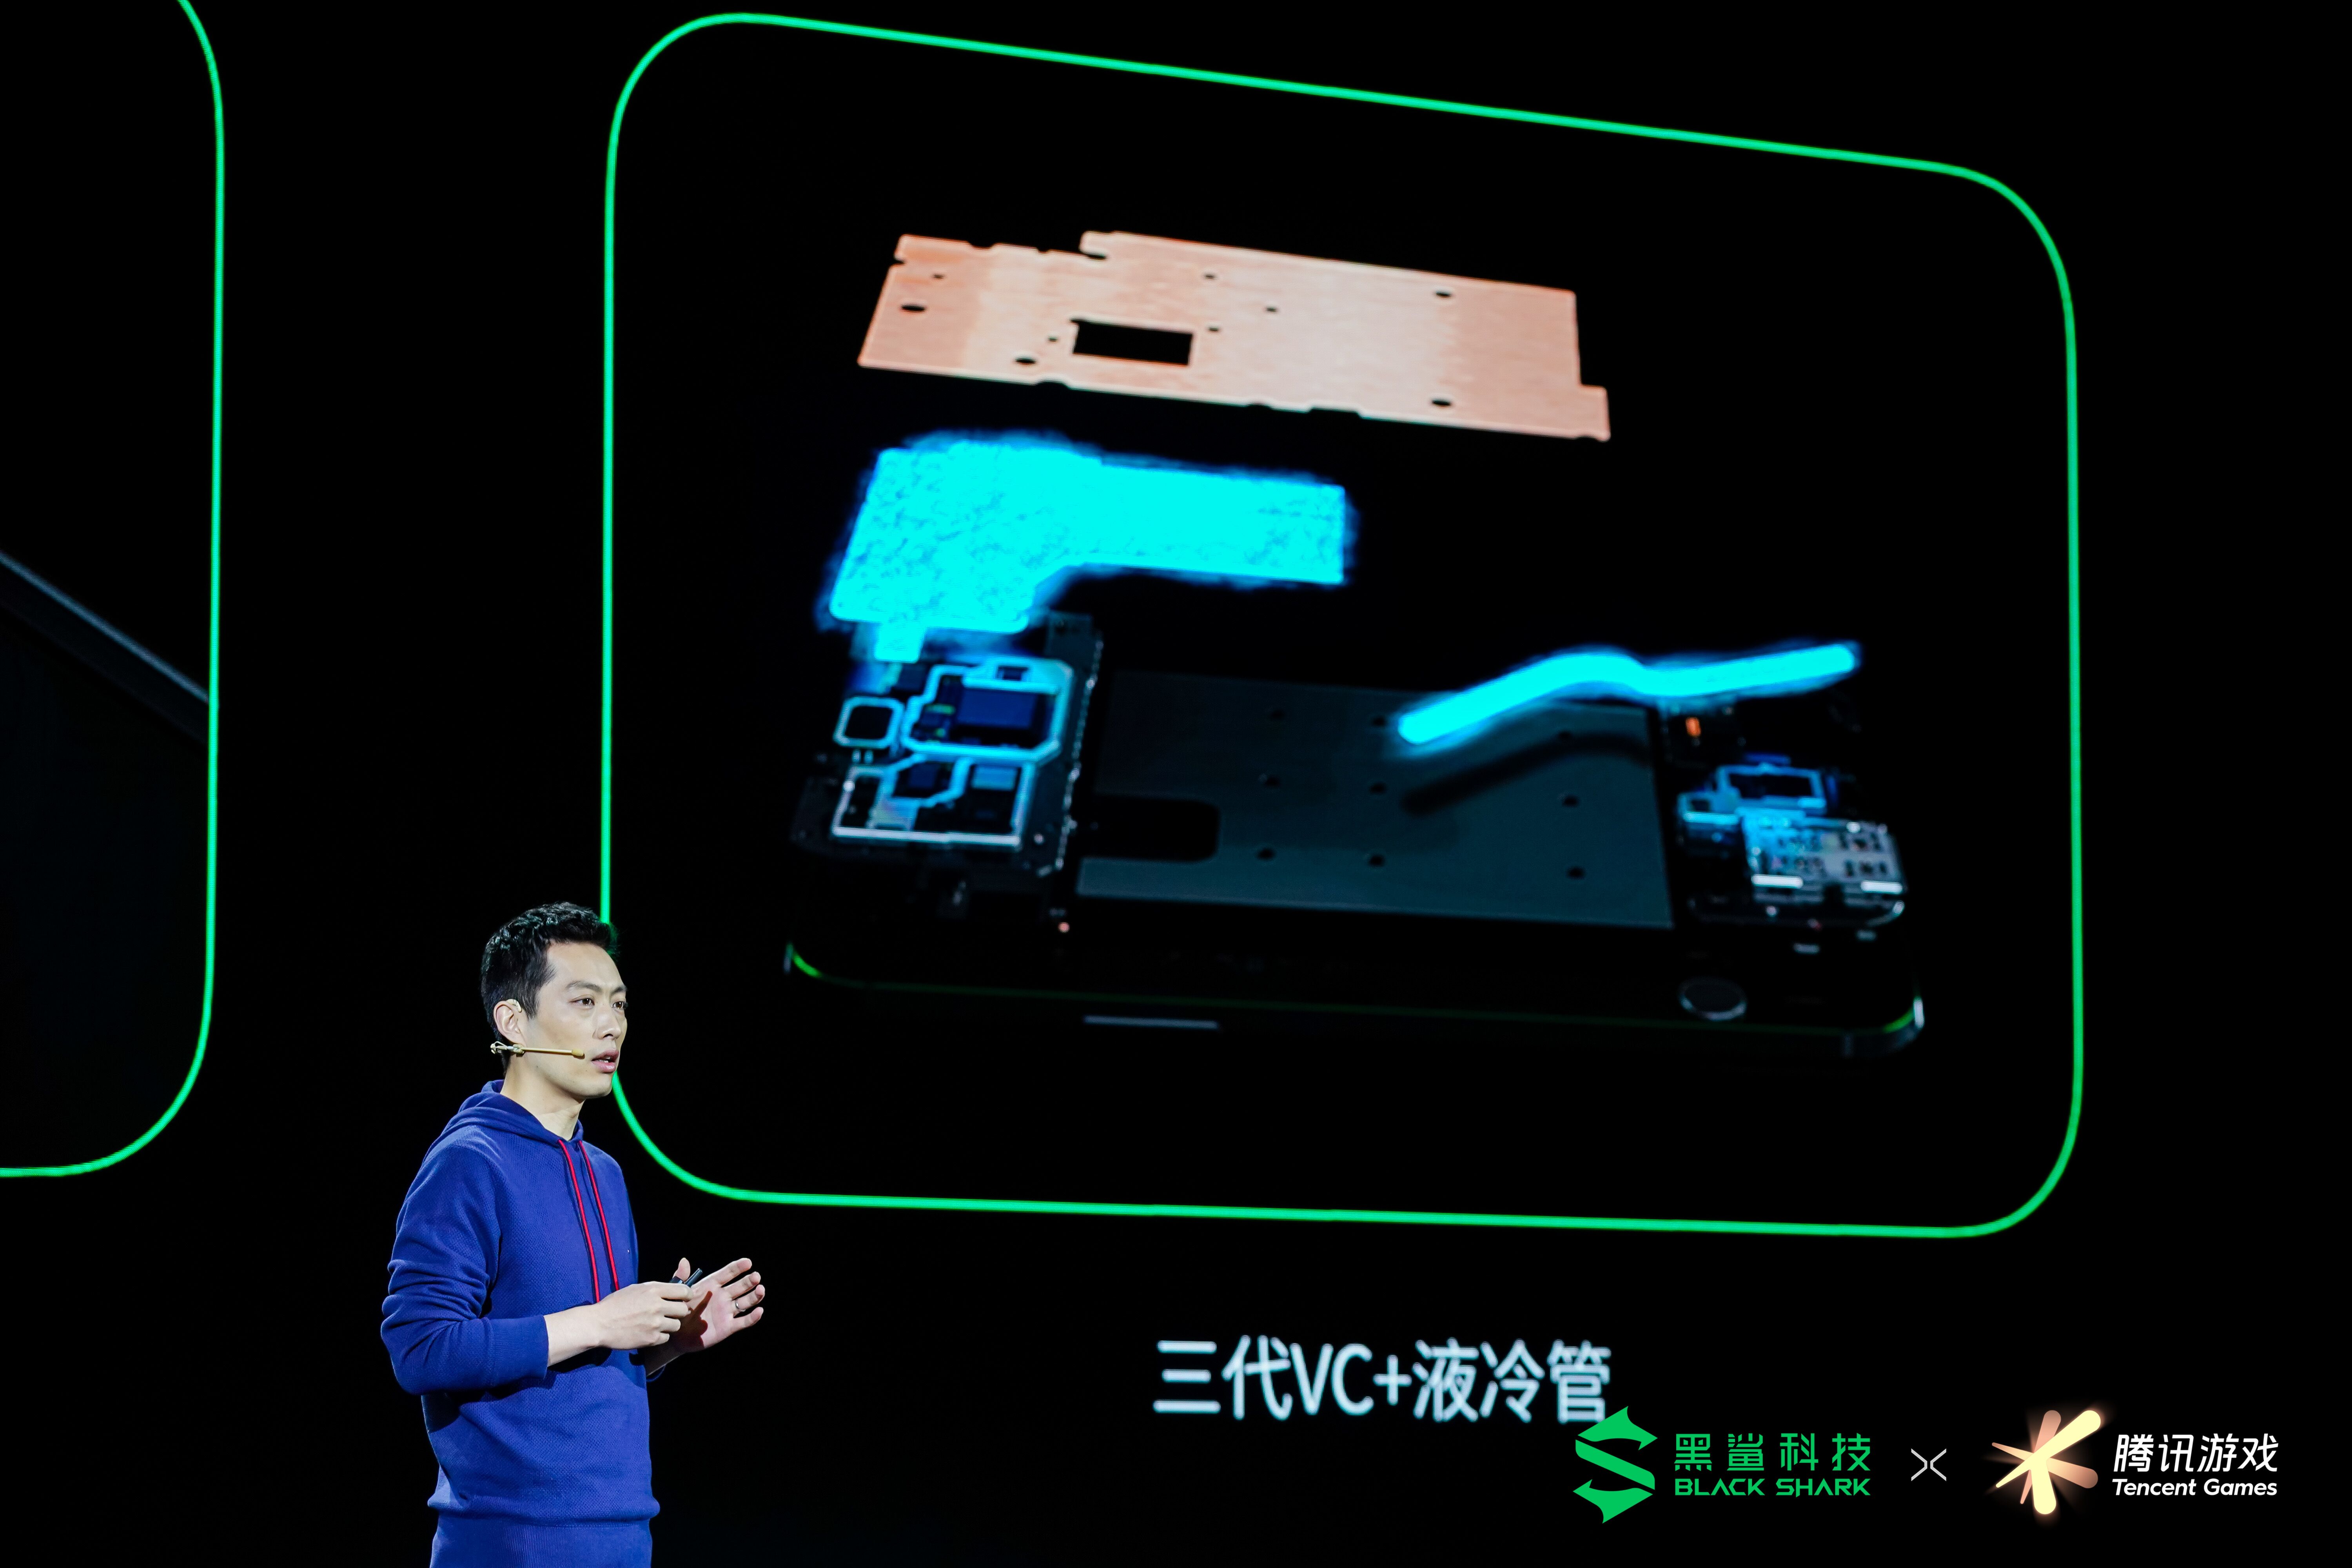 腾讯游戏深度定制 腾讯黑鲨游戏手机3系新品正式亮相